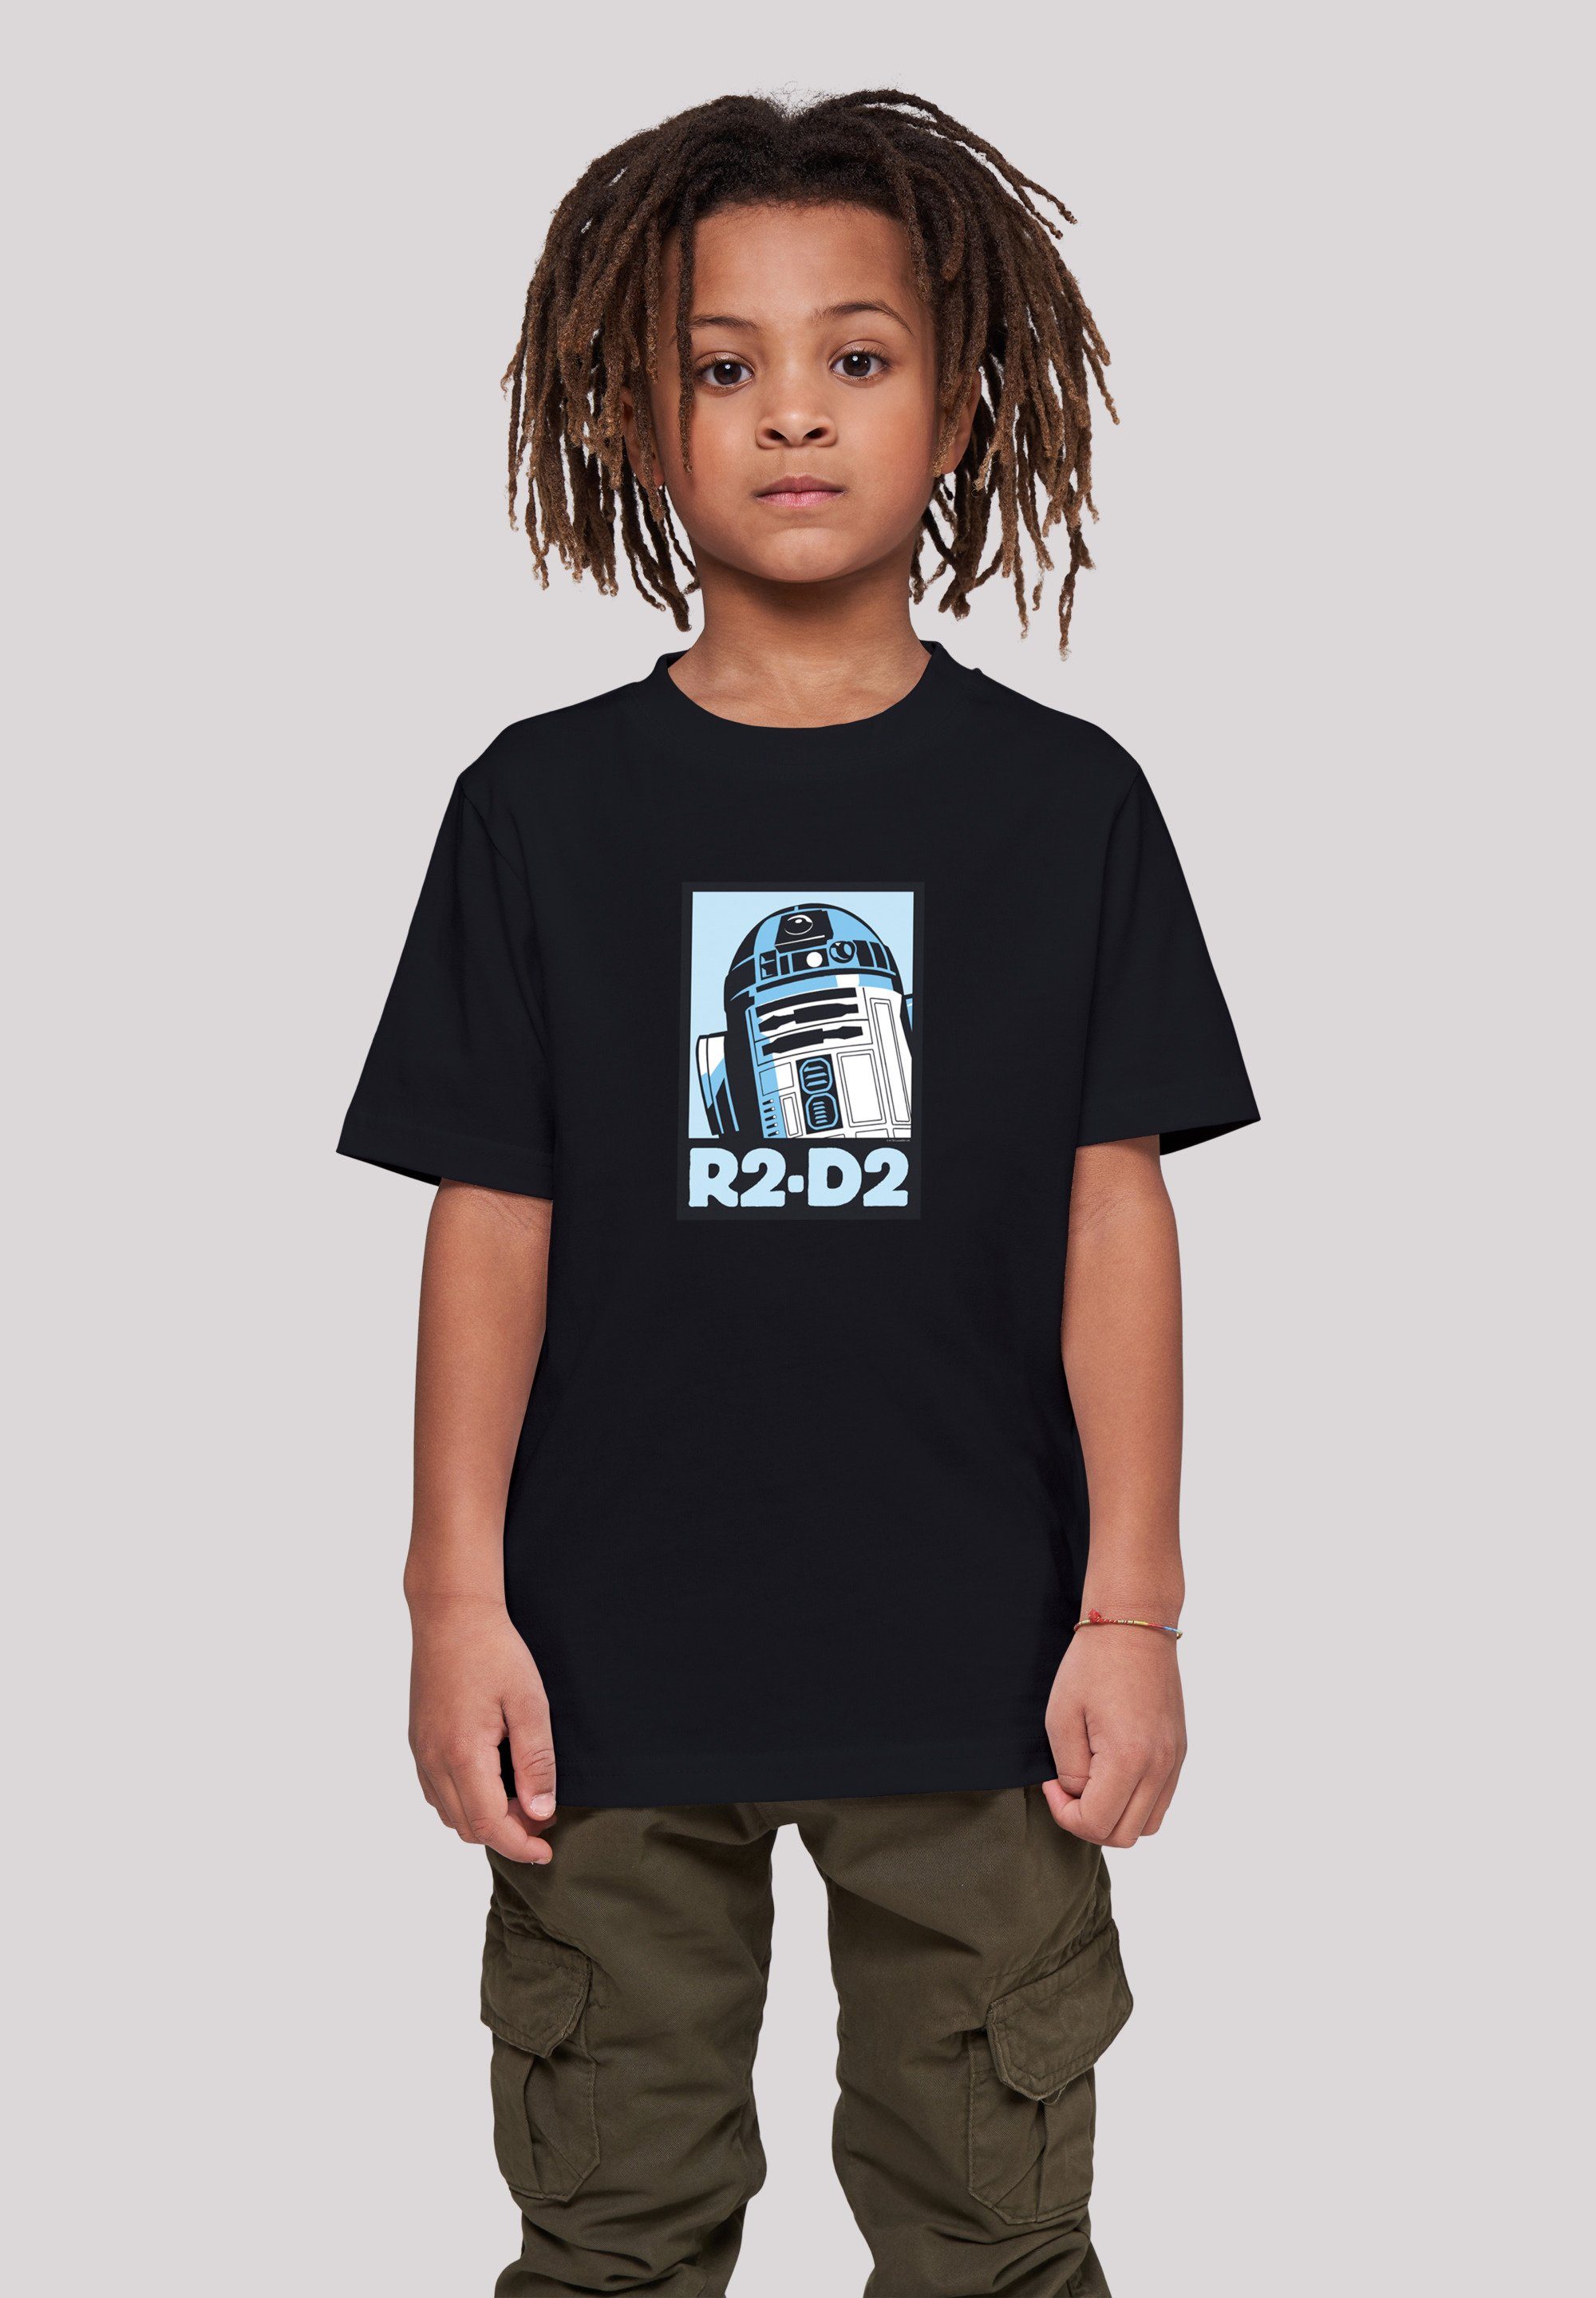 F4NT4STIC T-Shirt Star Wars weicher hohem Kinder,Premium Sehr Merch,Jungen, R2-D2 Unisex Poster Tragekomfort mit Baumwollstoff Mädchen,Bedruckt